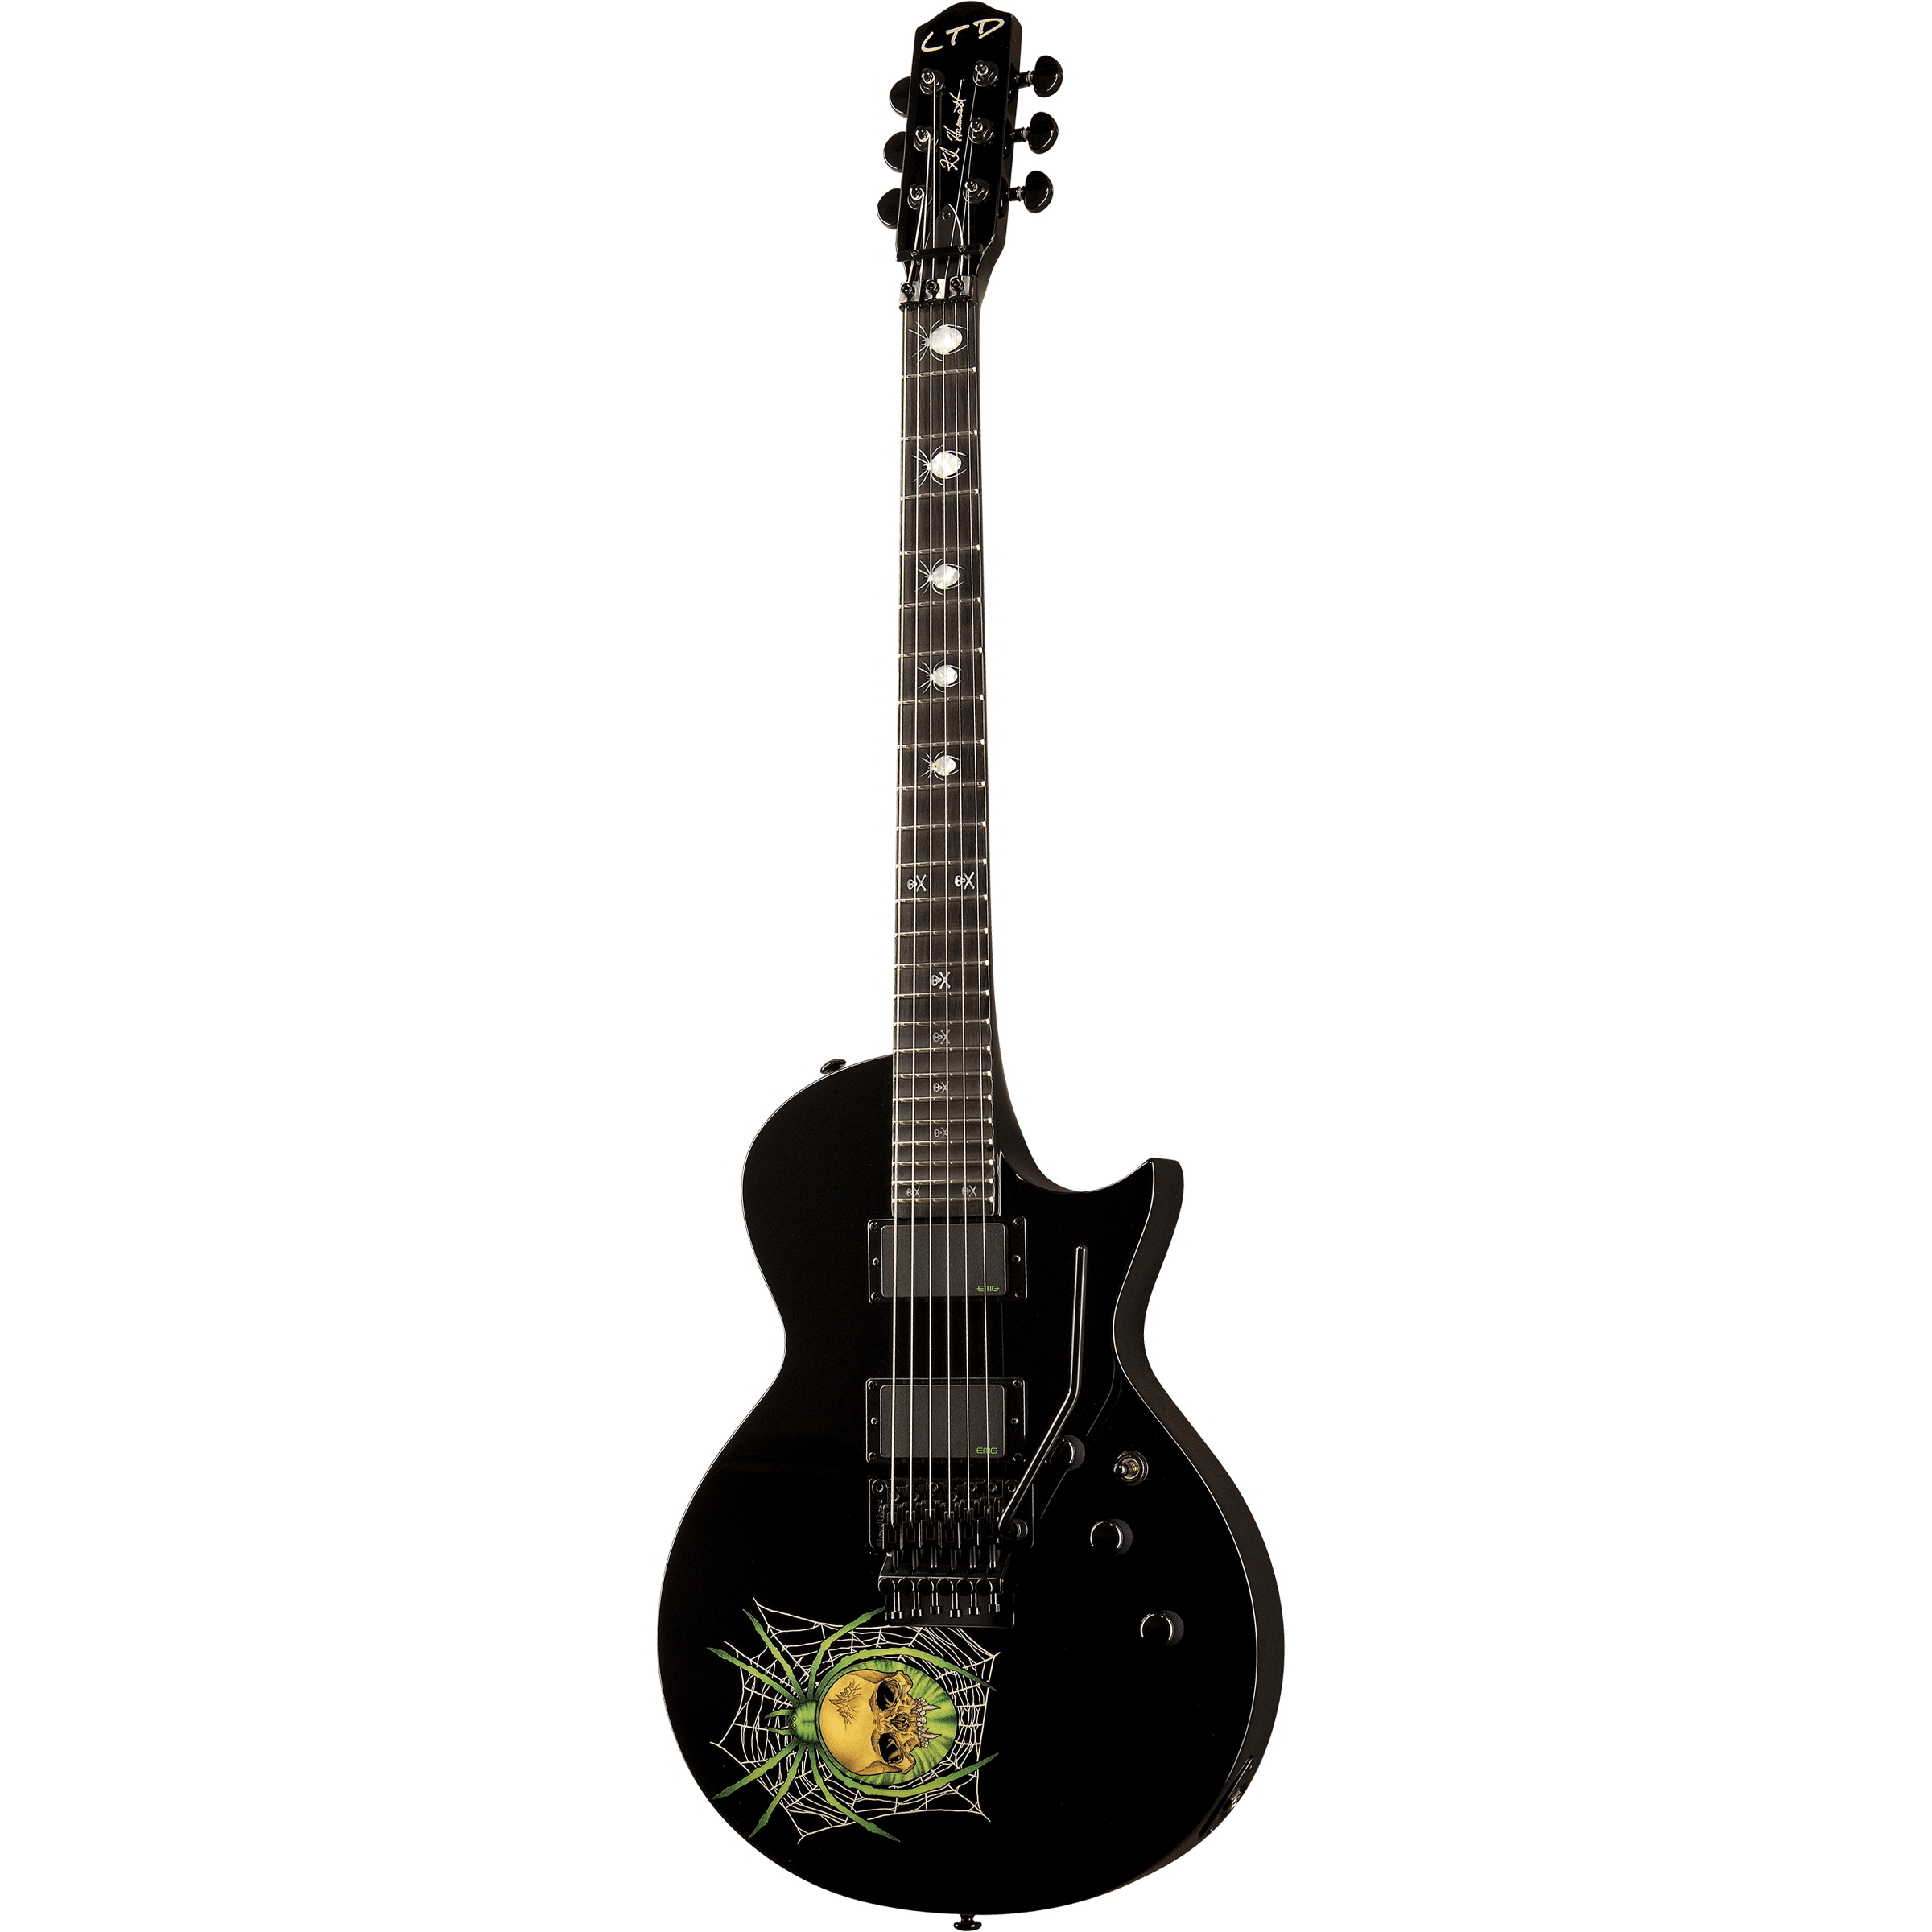 LTD Signatureシリーズ Kirk Hammett Signature エレキギターKH-3 SPIDER 30th Anniversary  Edition新品在庫状況をご確認ください | MUSIC PLANT WEBSHOP